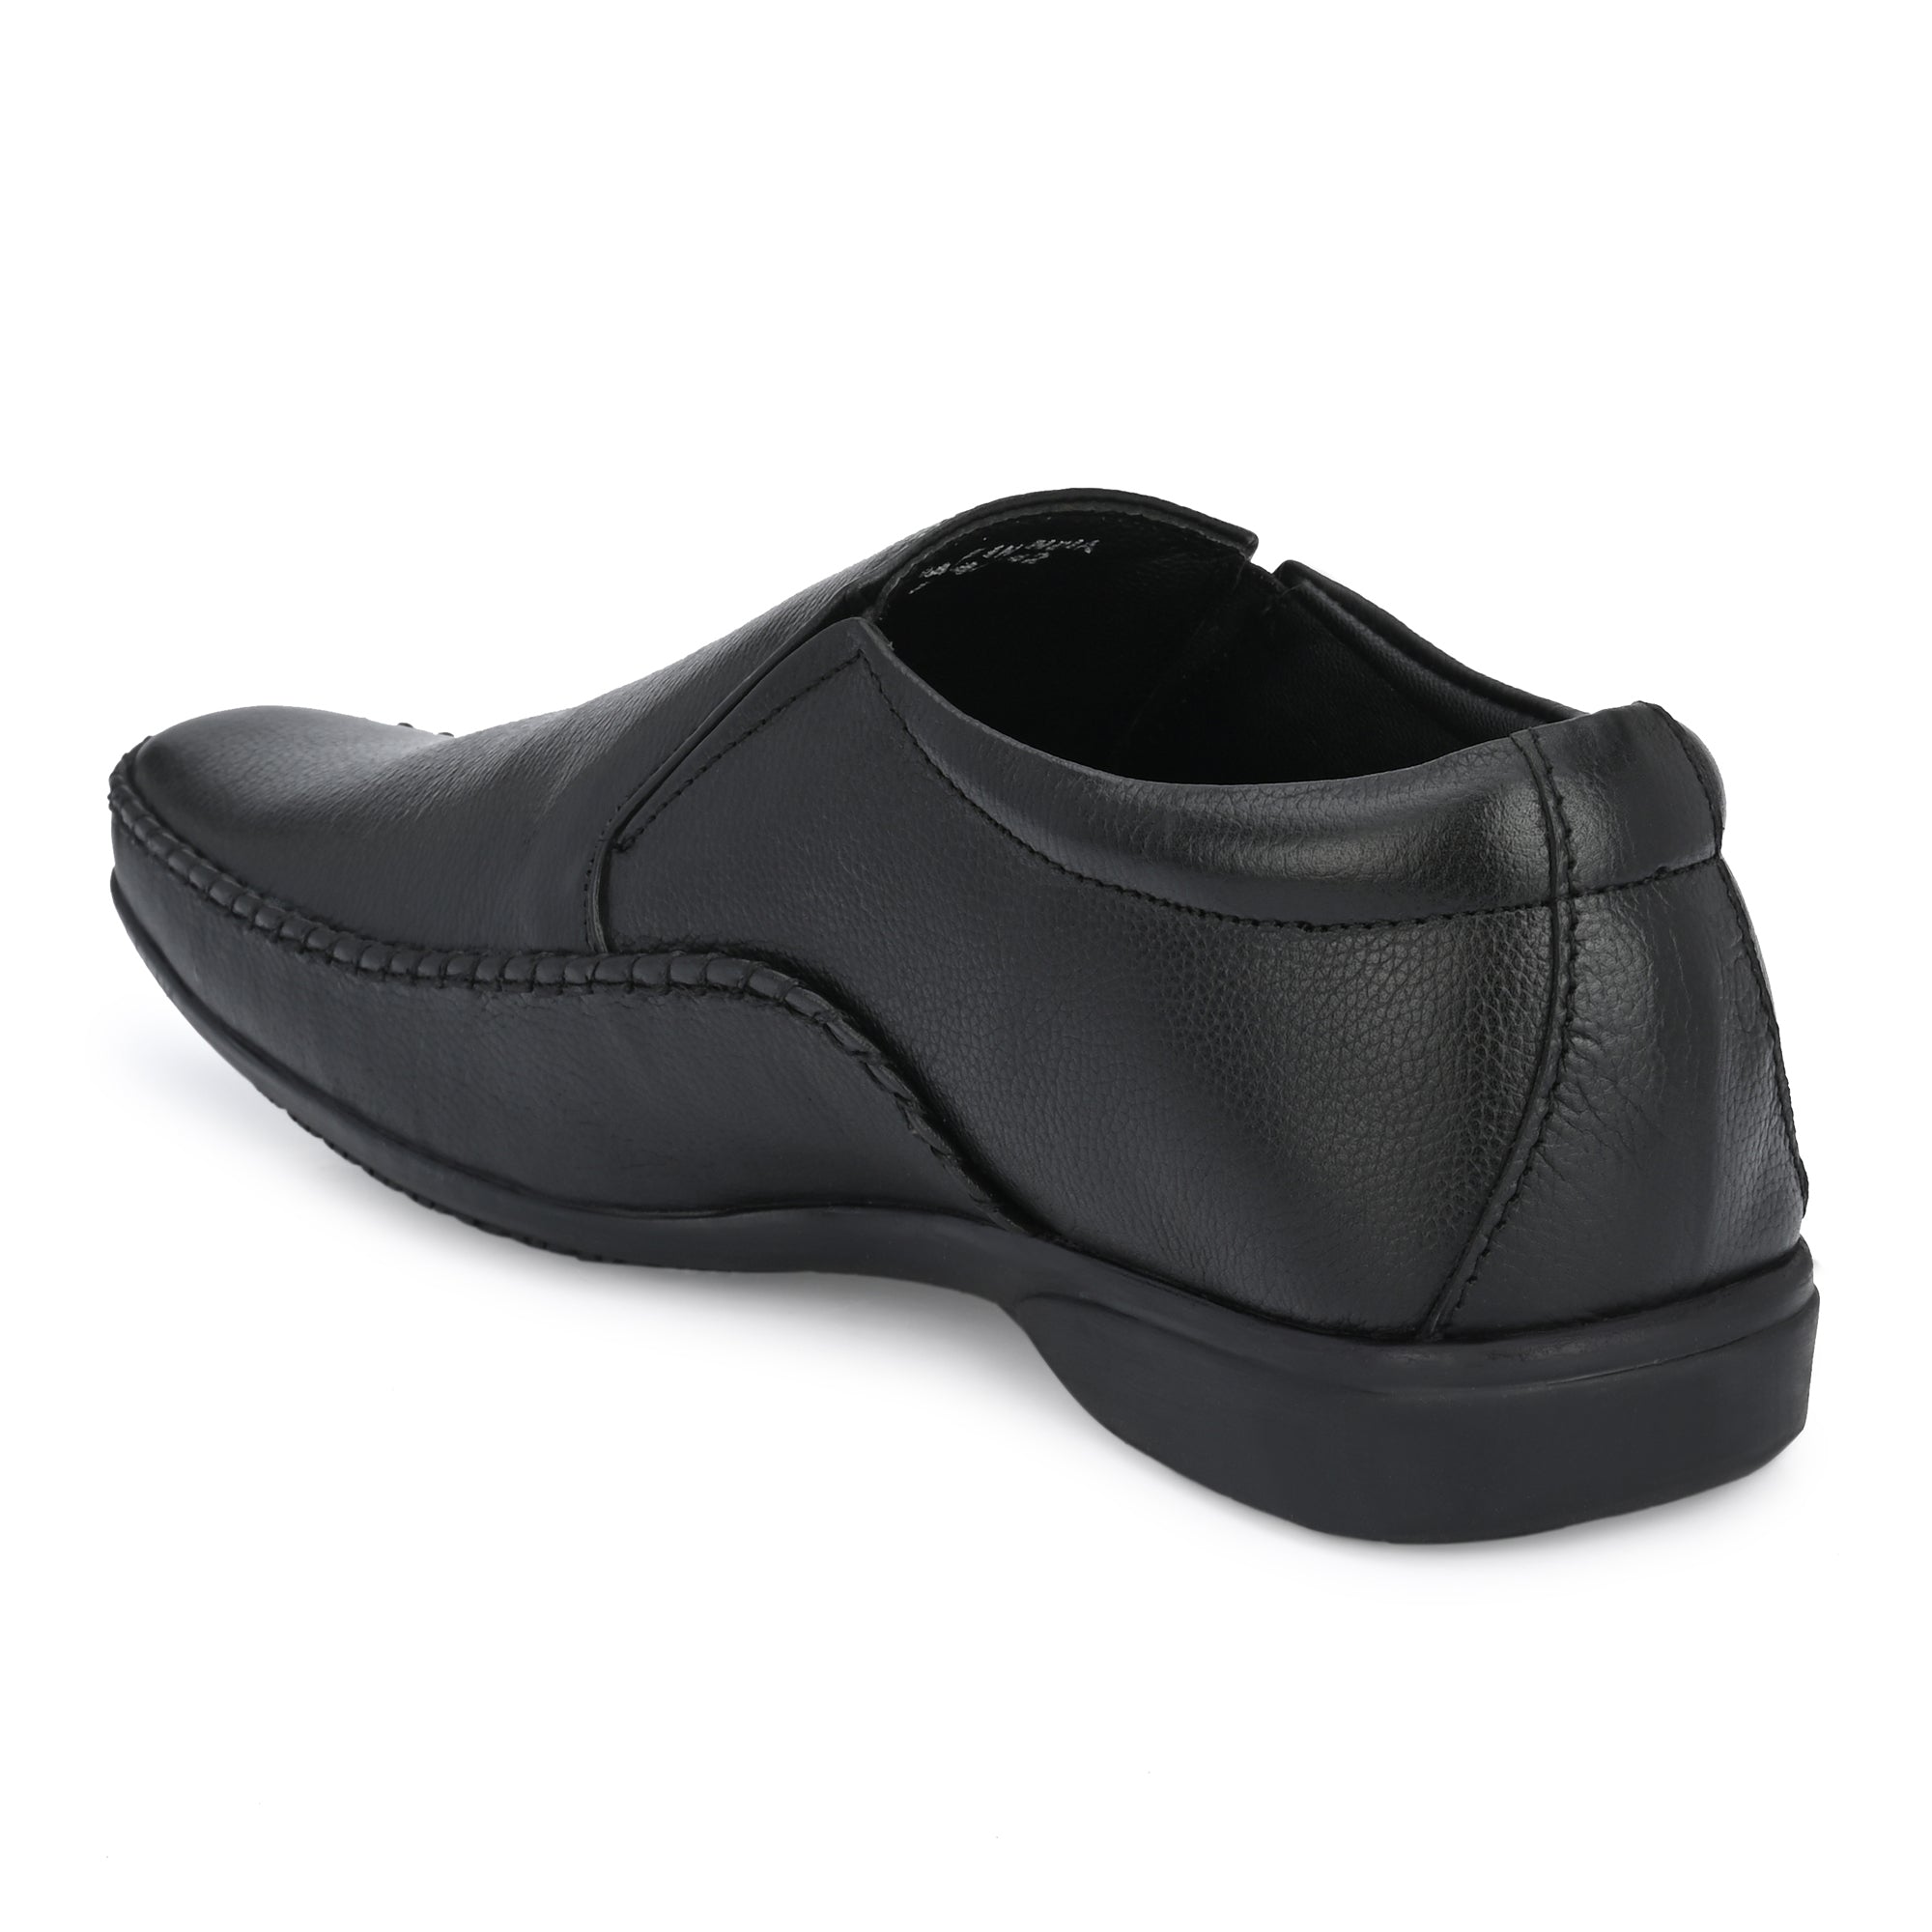 Egoss Comfortable Formal Slip On Shoes For Men